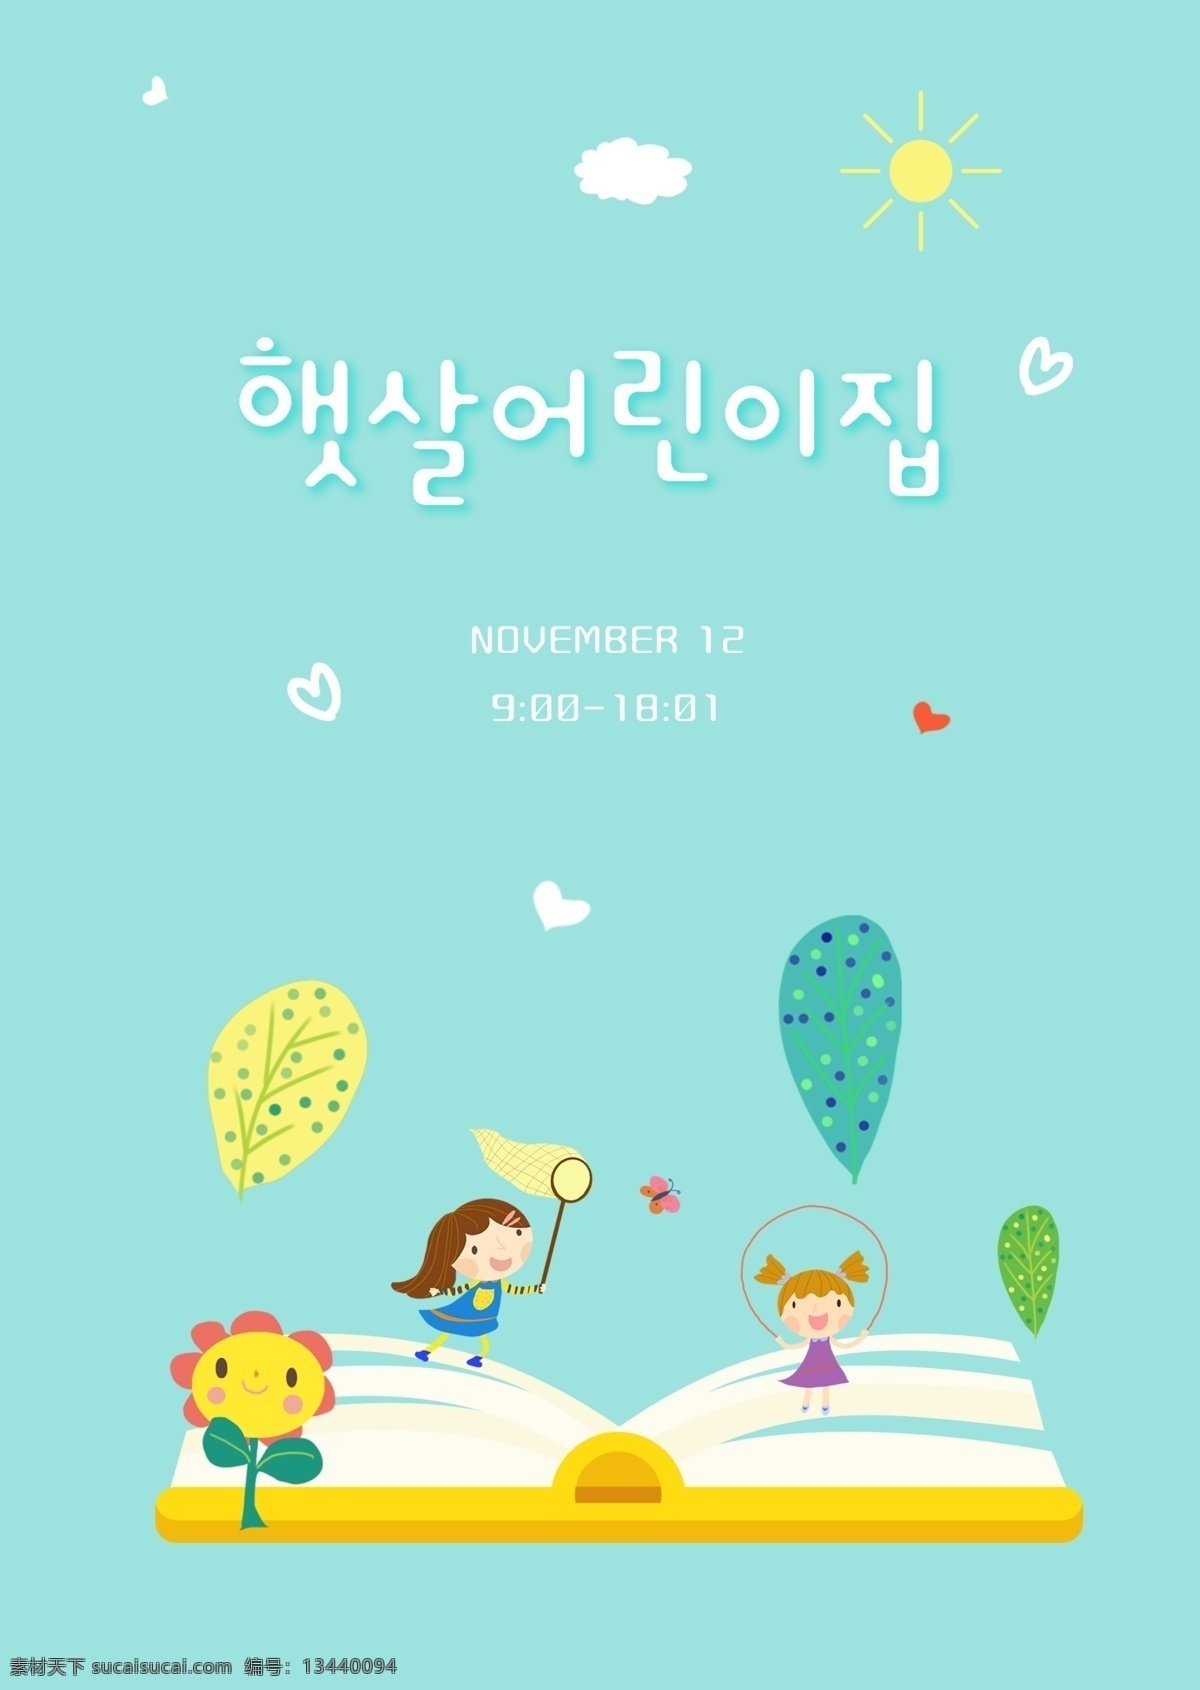 这本 书 lilliput 热 教育 海报 模板 儿童 之家 云 绿色 女人 运动会 新鲜 可爱 太阳 蓝色 韩国风格 白色 韩国 式 选择 世界 上 的卡 通 婴儿 在过去 卡通音乐 向日葵